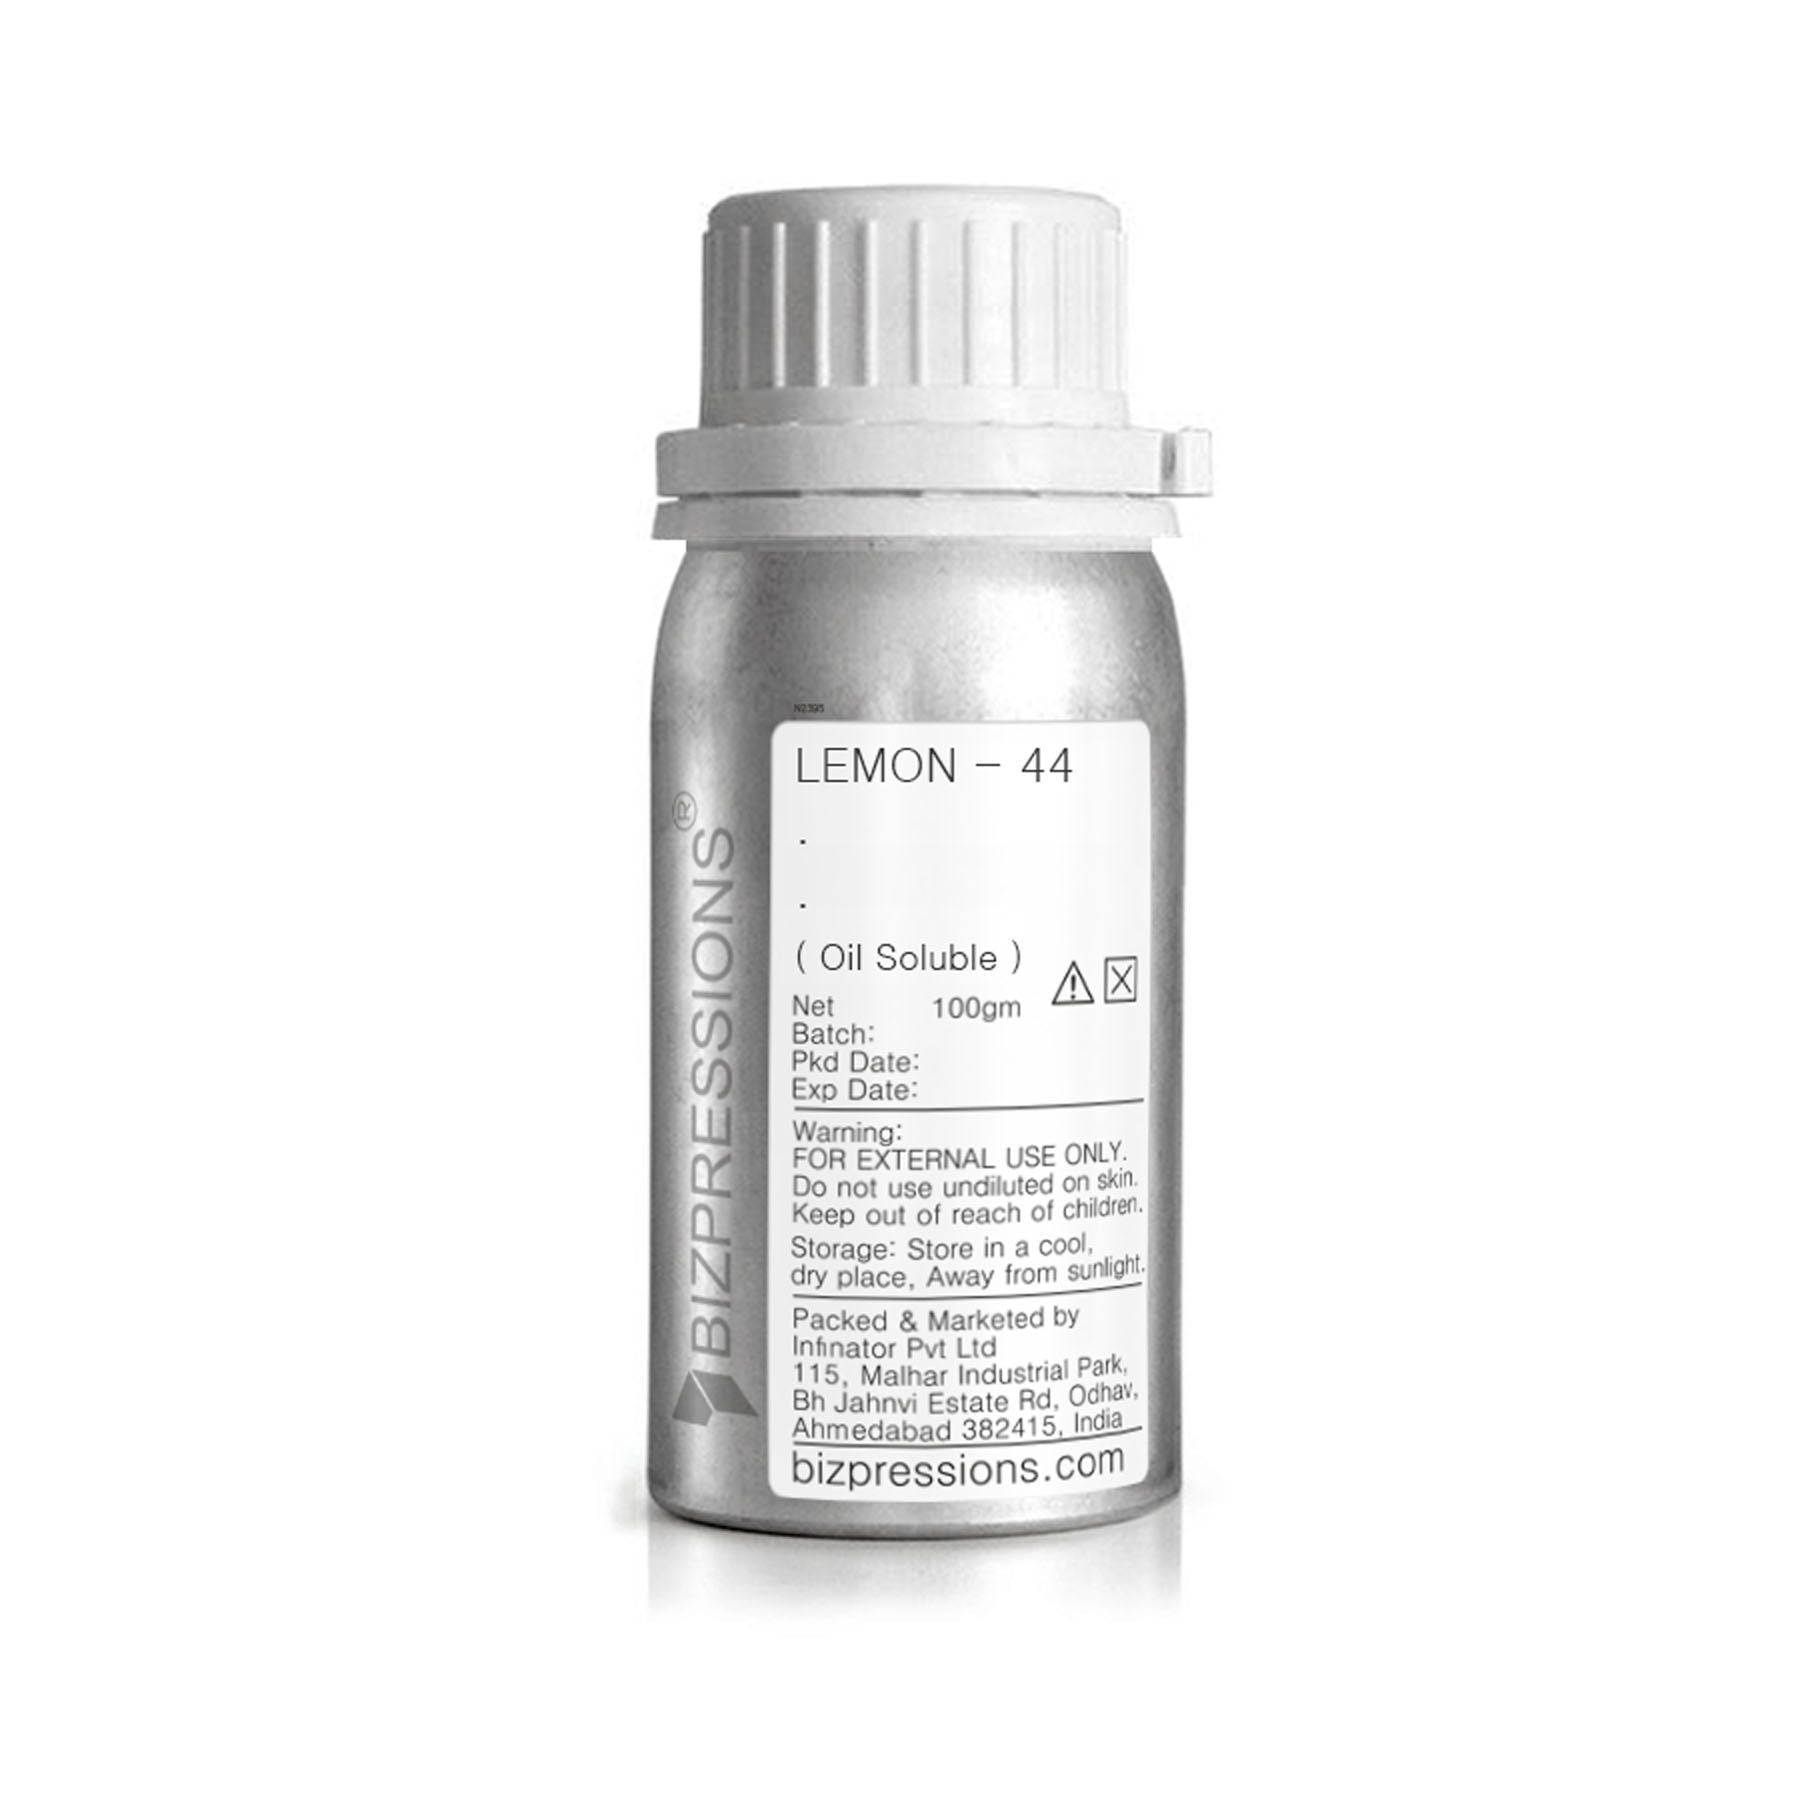 LEMON - 44 - Fragrance ( Oil Soluble ) - 100 gm